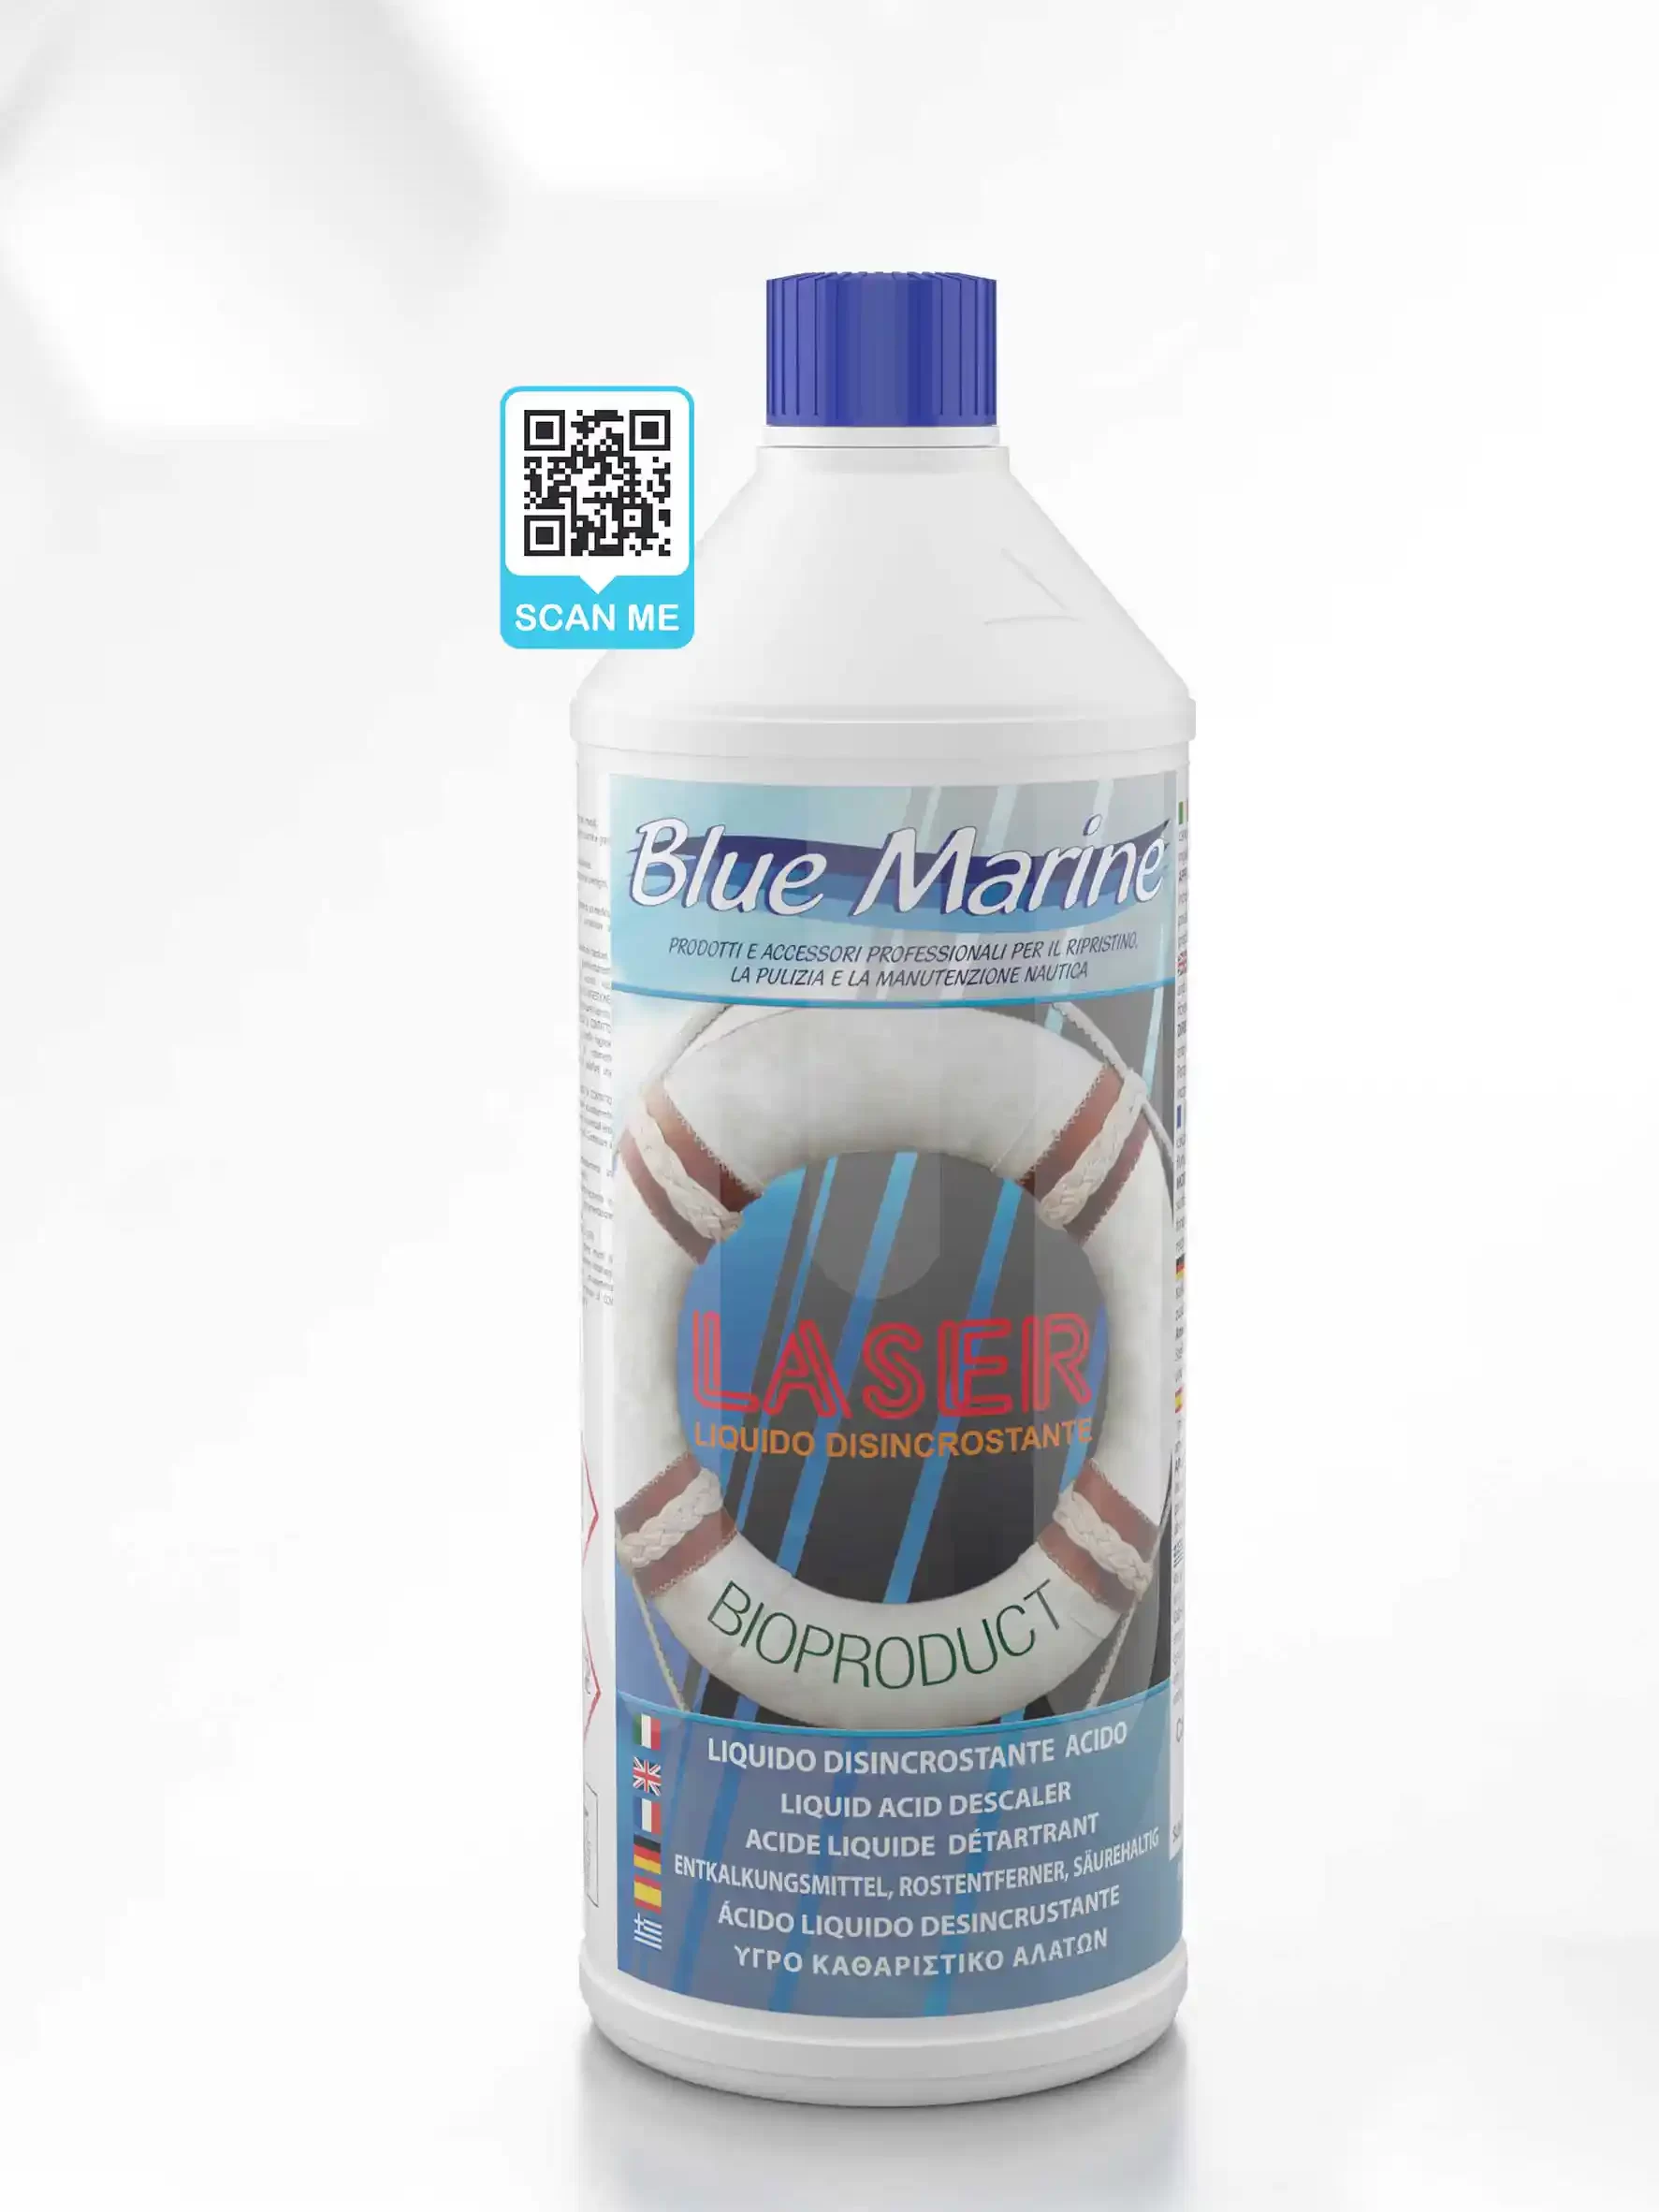 Laser Liquido